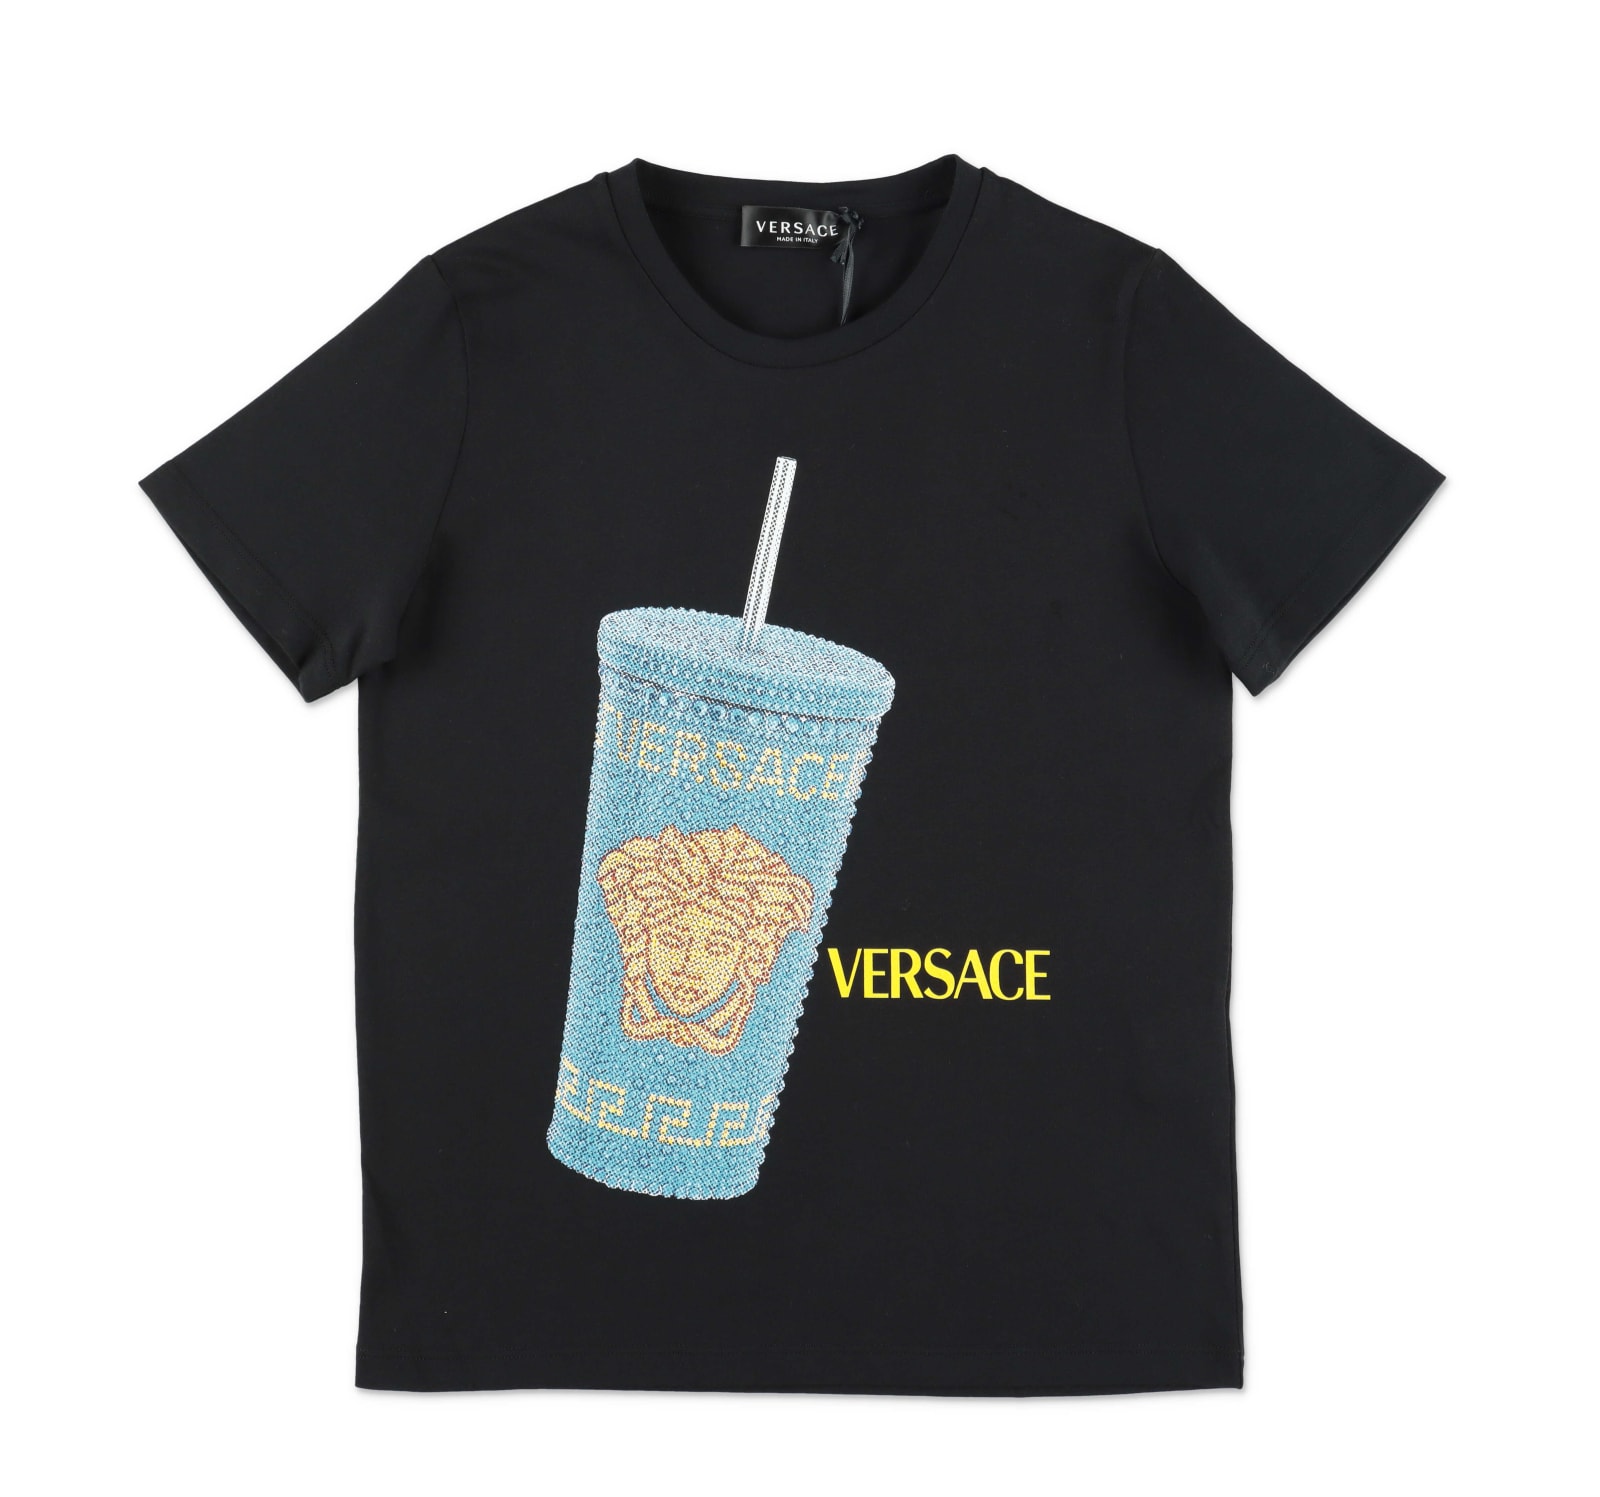 Versace T-shirt Nera In Jersey Di Cotone Bambino